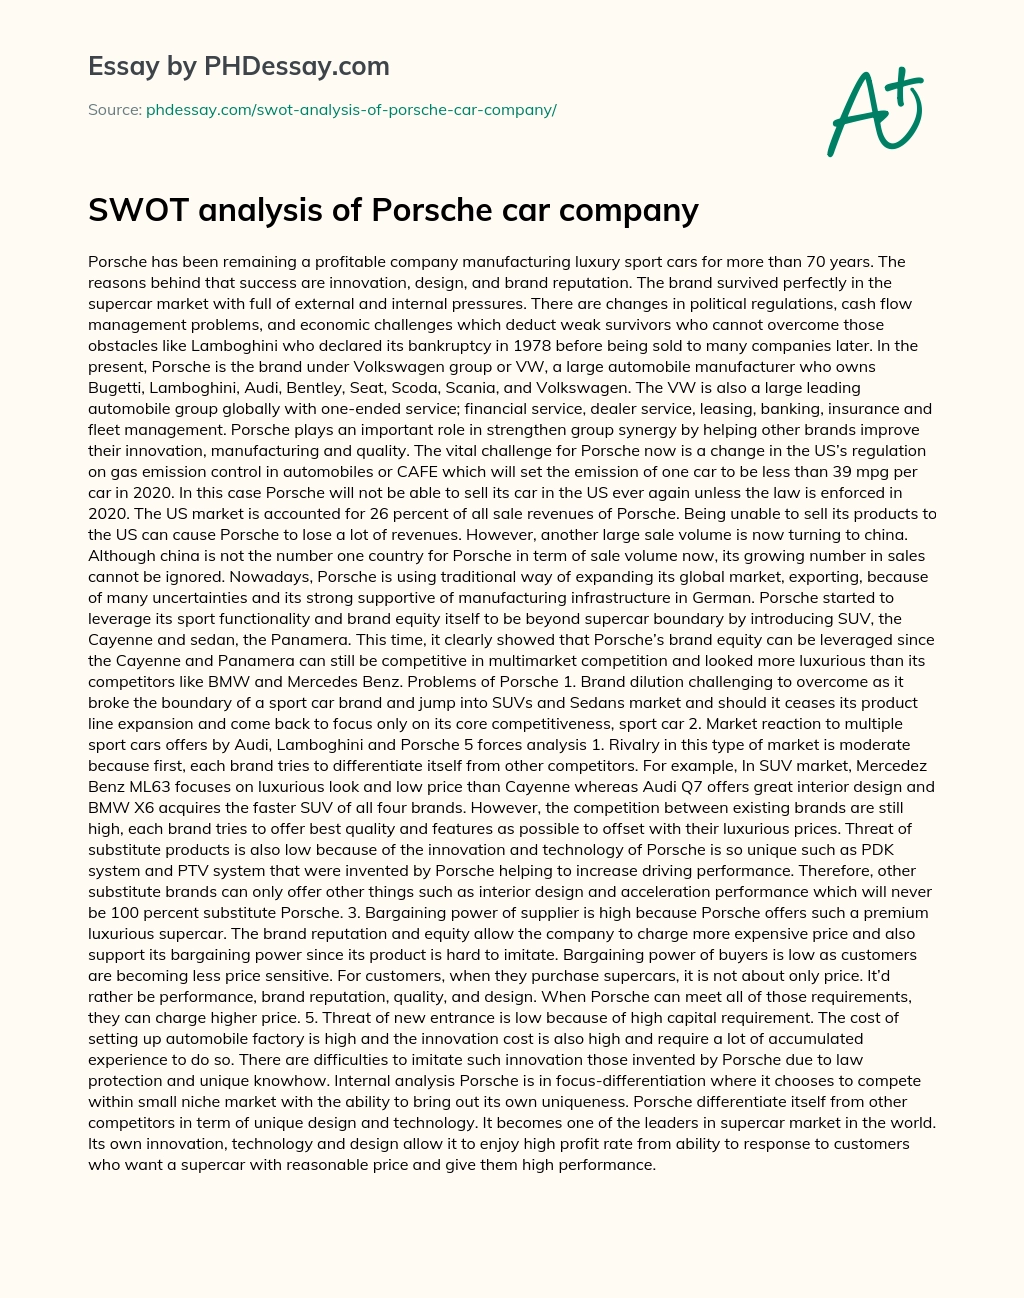 SWOT Analysis of Porsche Car Company essay